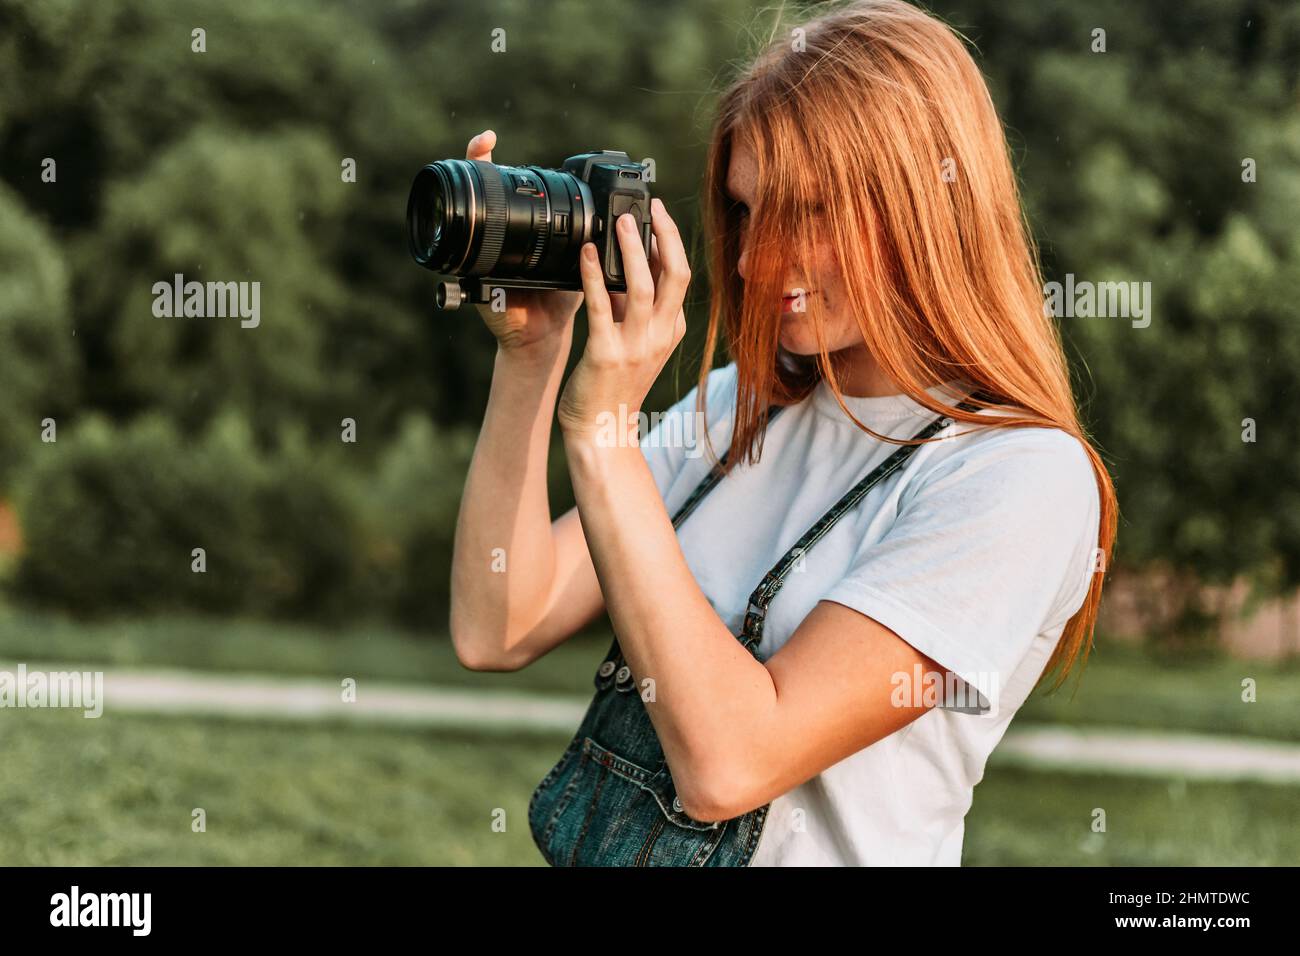 Ingwer teen, Mädchen, das Fotos mit Kamera Stockfoto